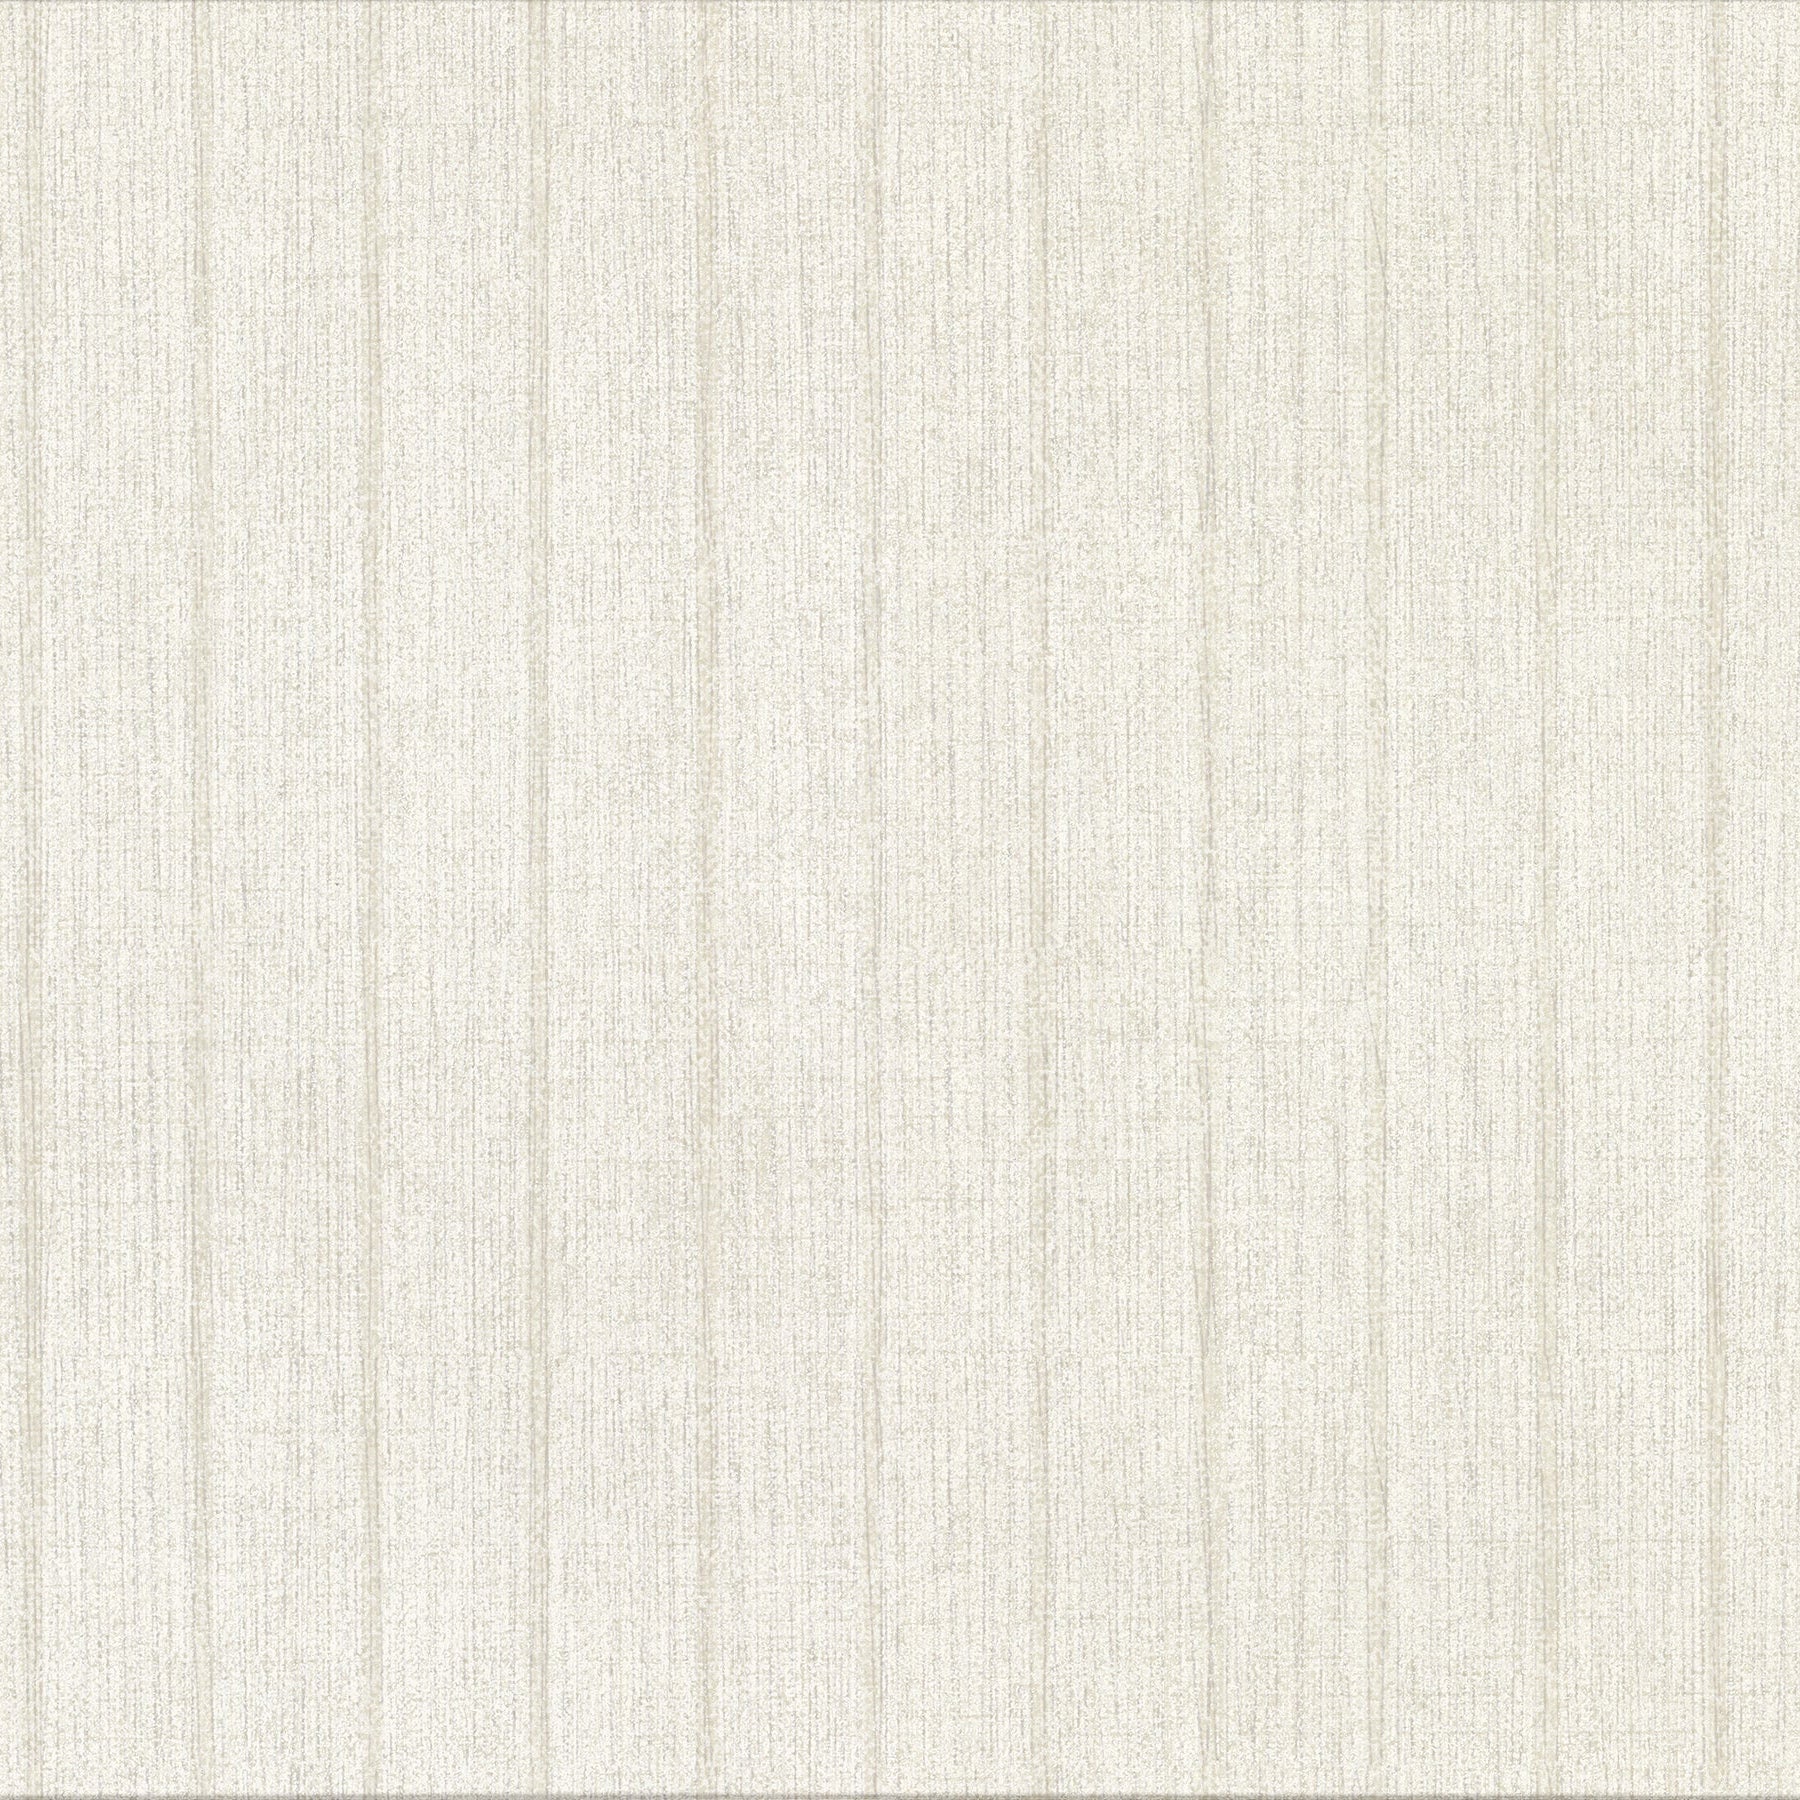 Order 2909-MLC-162 Riva Ramona Champagne Stripe Texture Brewster Wallpaper